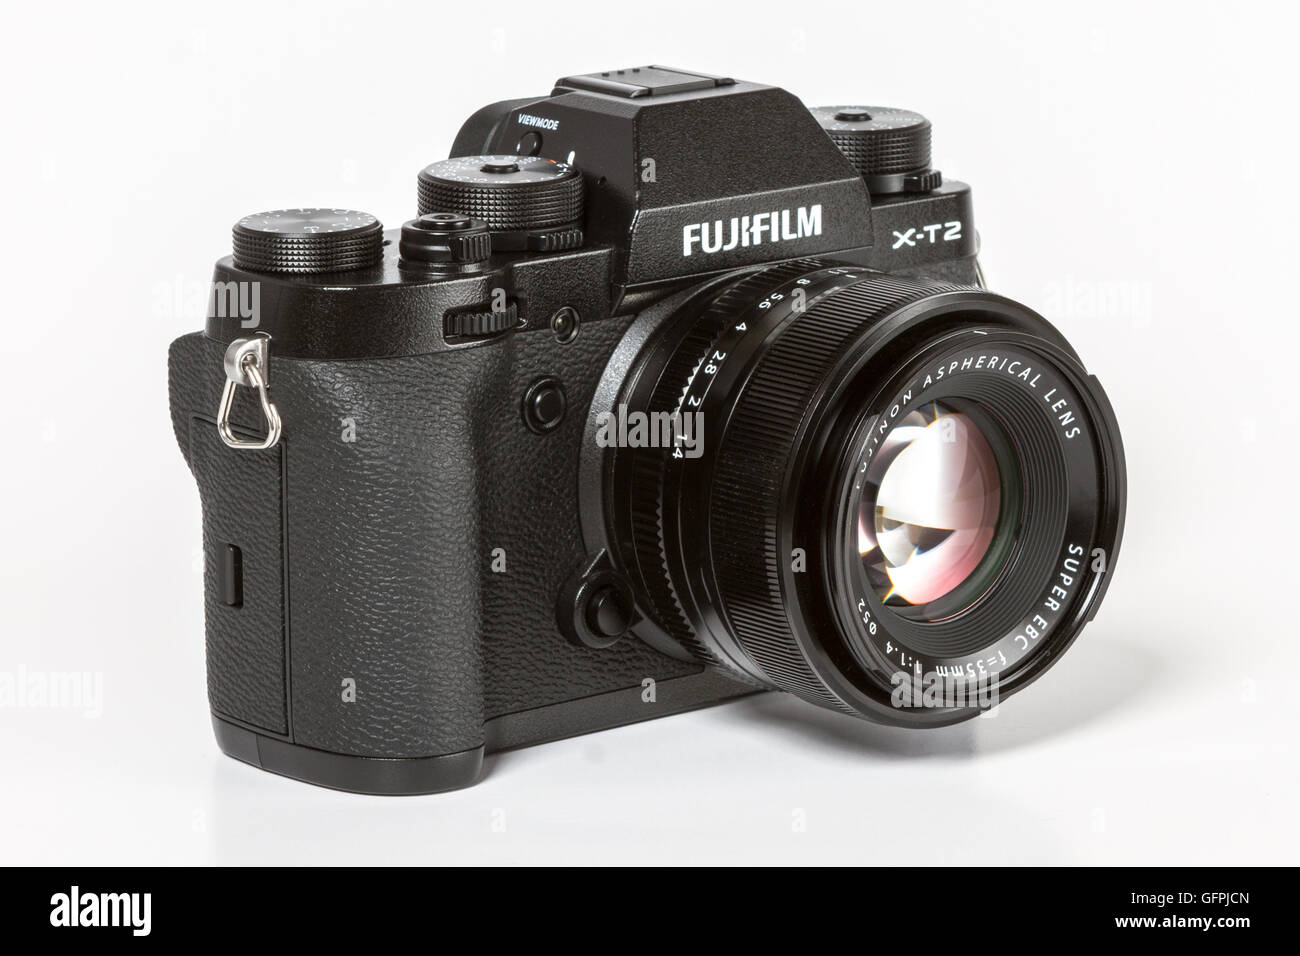 Scheiden Weggooien De daadwerkelijke Fujifilm x t2 hi-res stock photography and images - Alamy